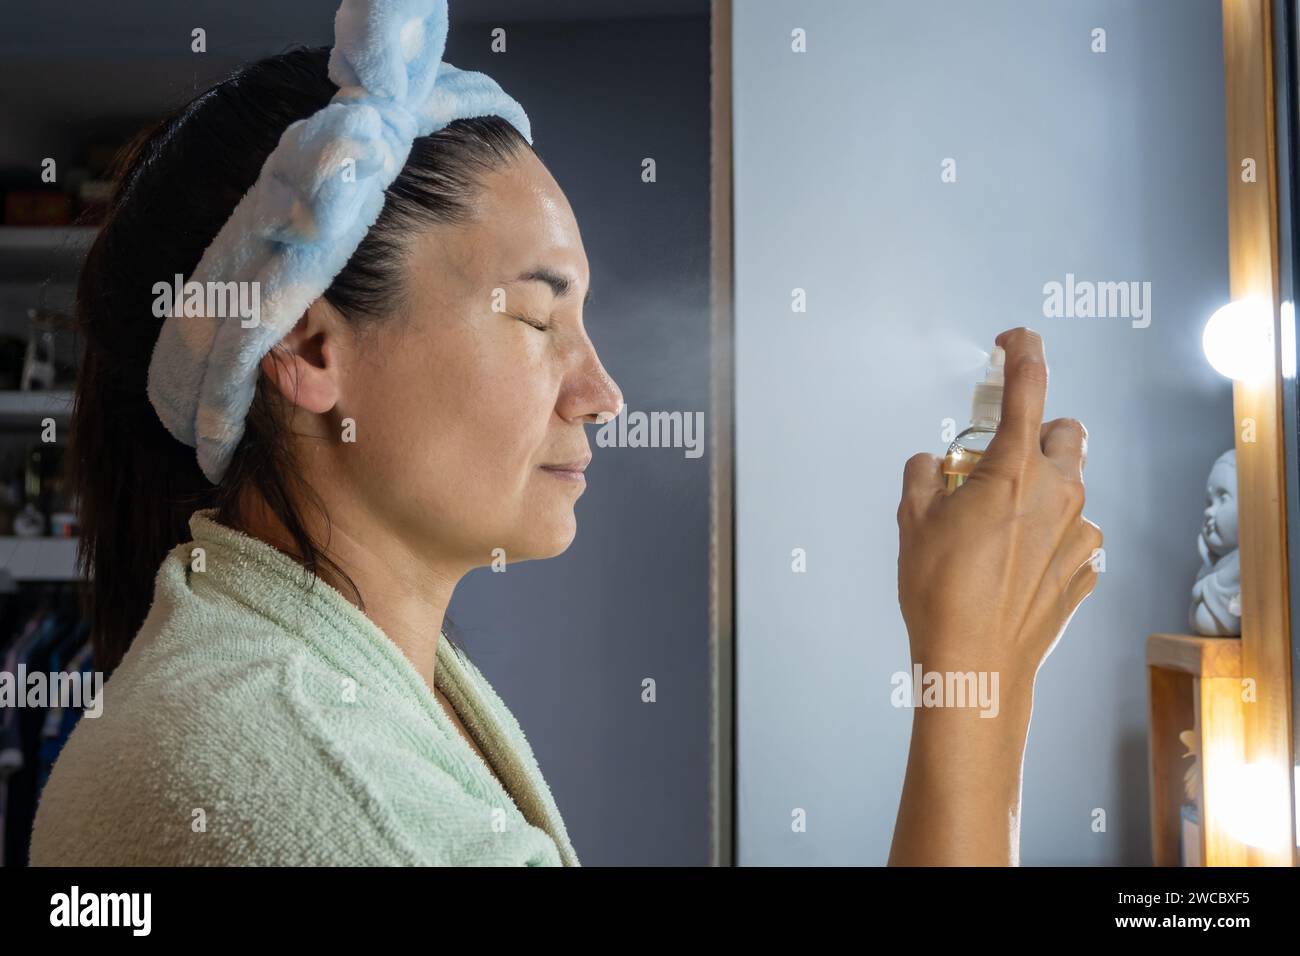 La femme applique une lotion sur son visage avec un flacon pulvérisateur. Banque D'Images